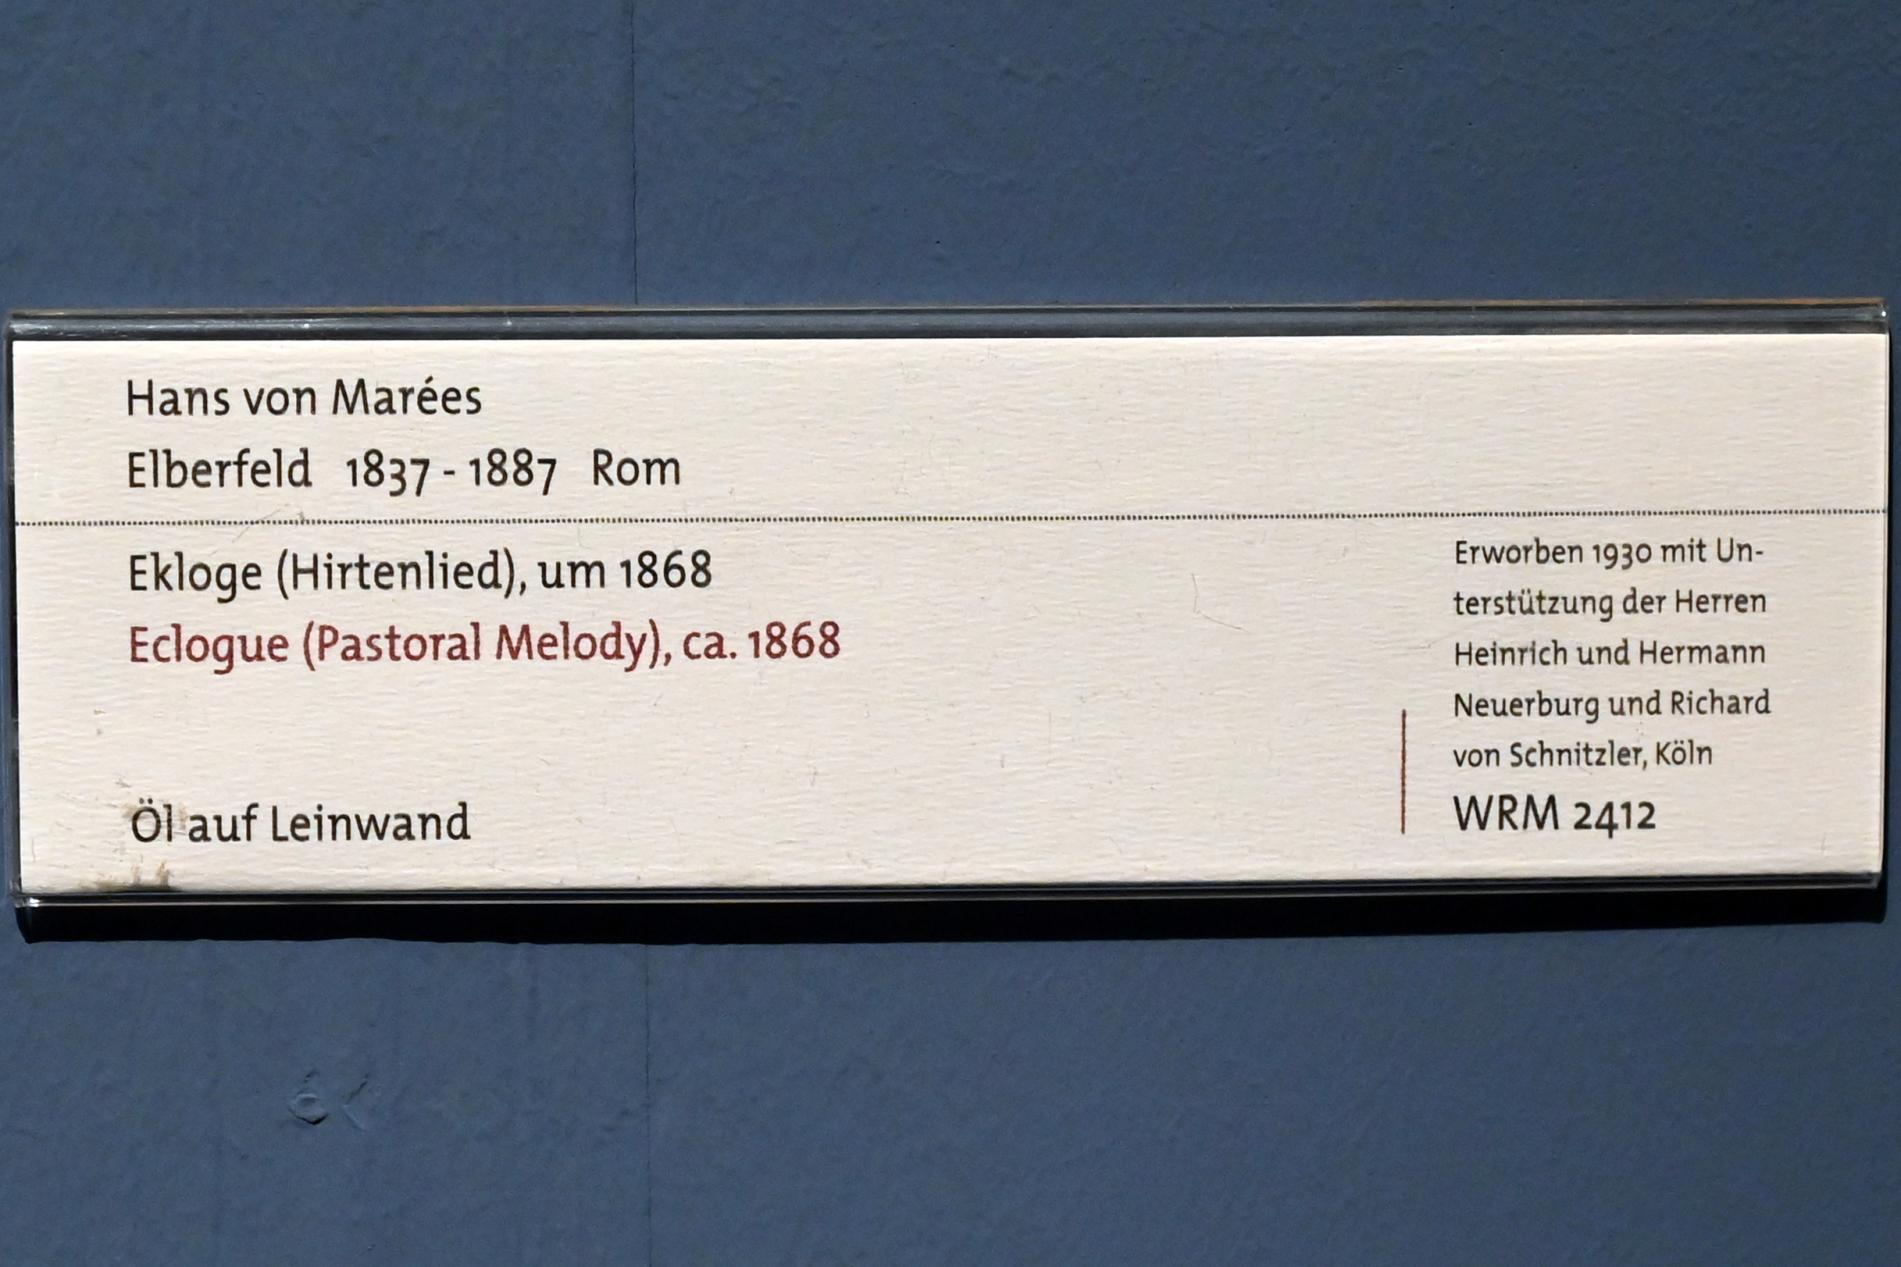 Hans von Marées (1861–1886), Ekloge (Hirtenlied), Köln, Wallraf-Richartz-Museum, 19. Jahrhundert - Saal 1, um 1868, Bild 2/2